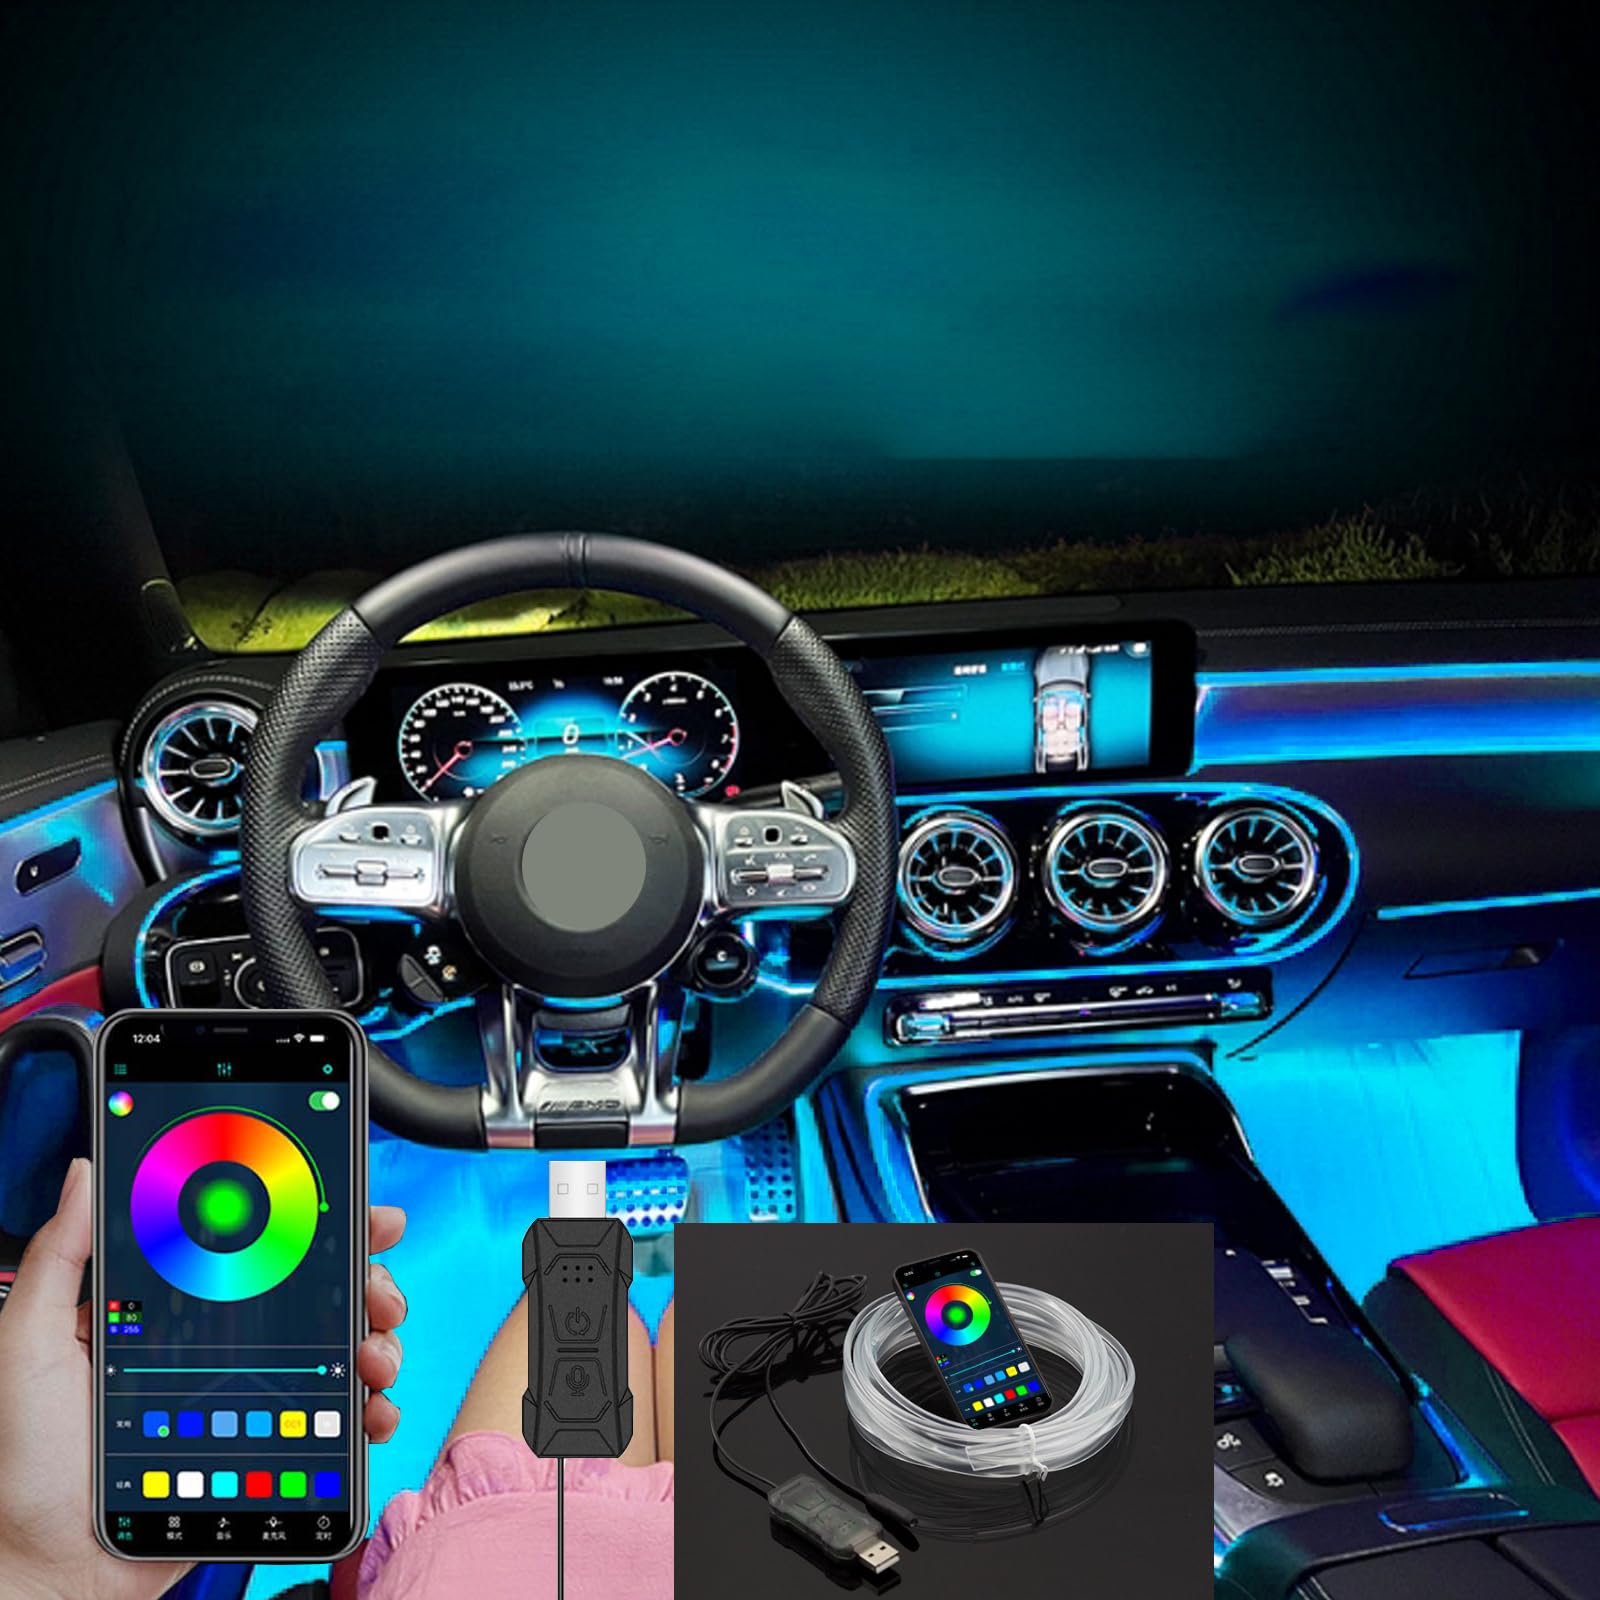 Auto LED Innenbeleuchtung,7 Farben Musik Anpassen Erwenden Sie die APP-Steuerung,USB EL Wire Auto 5m/16.4ft Ambientebeleuchtung 5v Autolicht Geeignet für Armaturenbrettfugen, DIY-Designs von Kwoxet